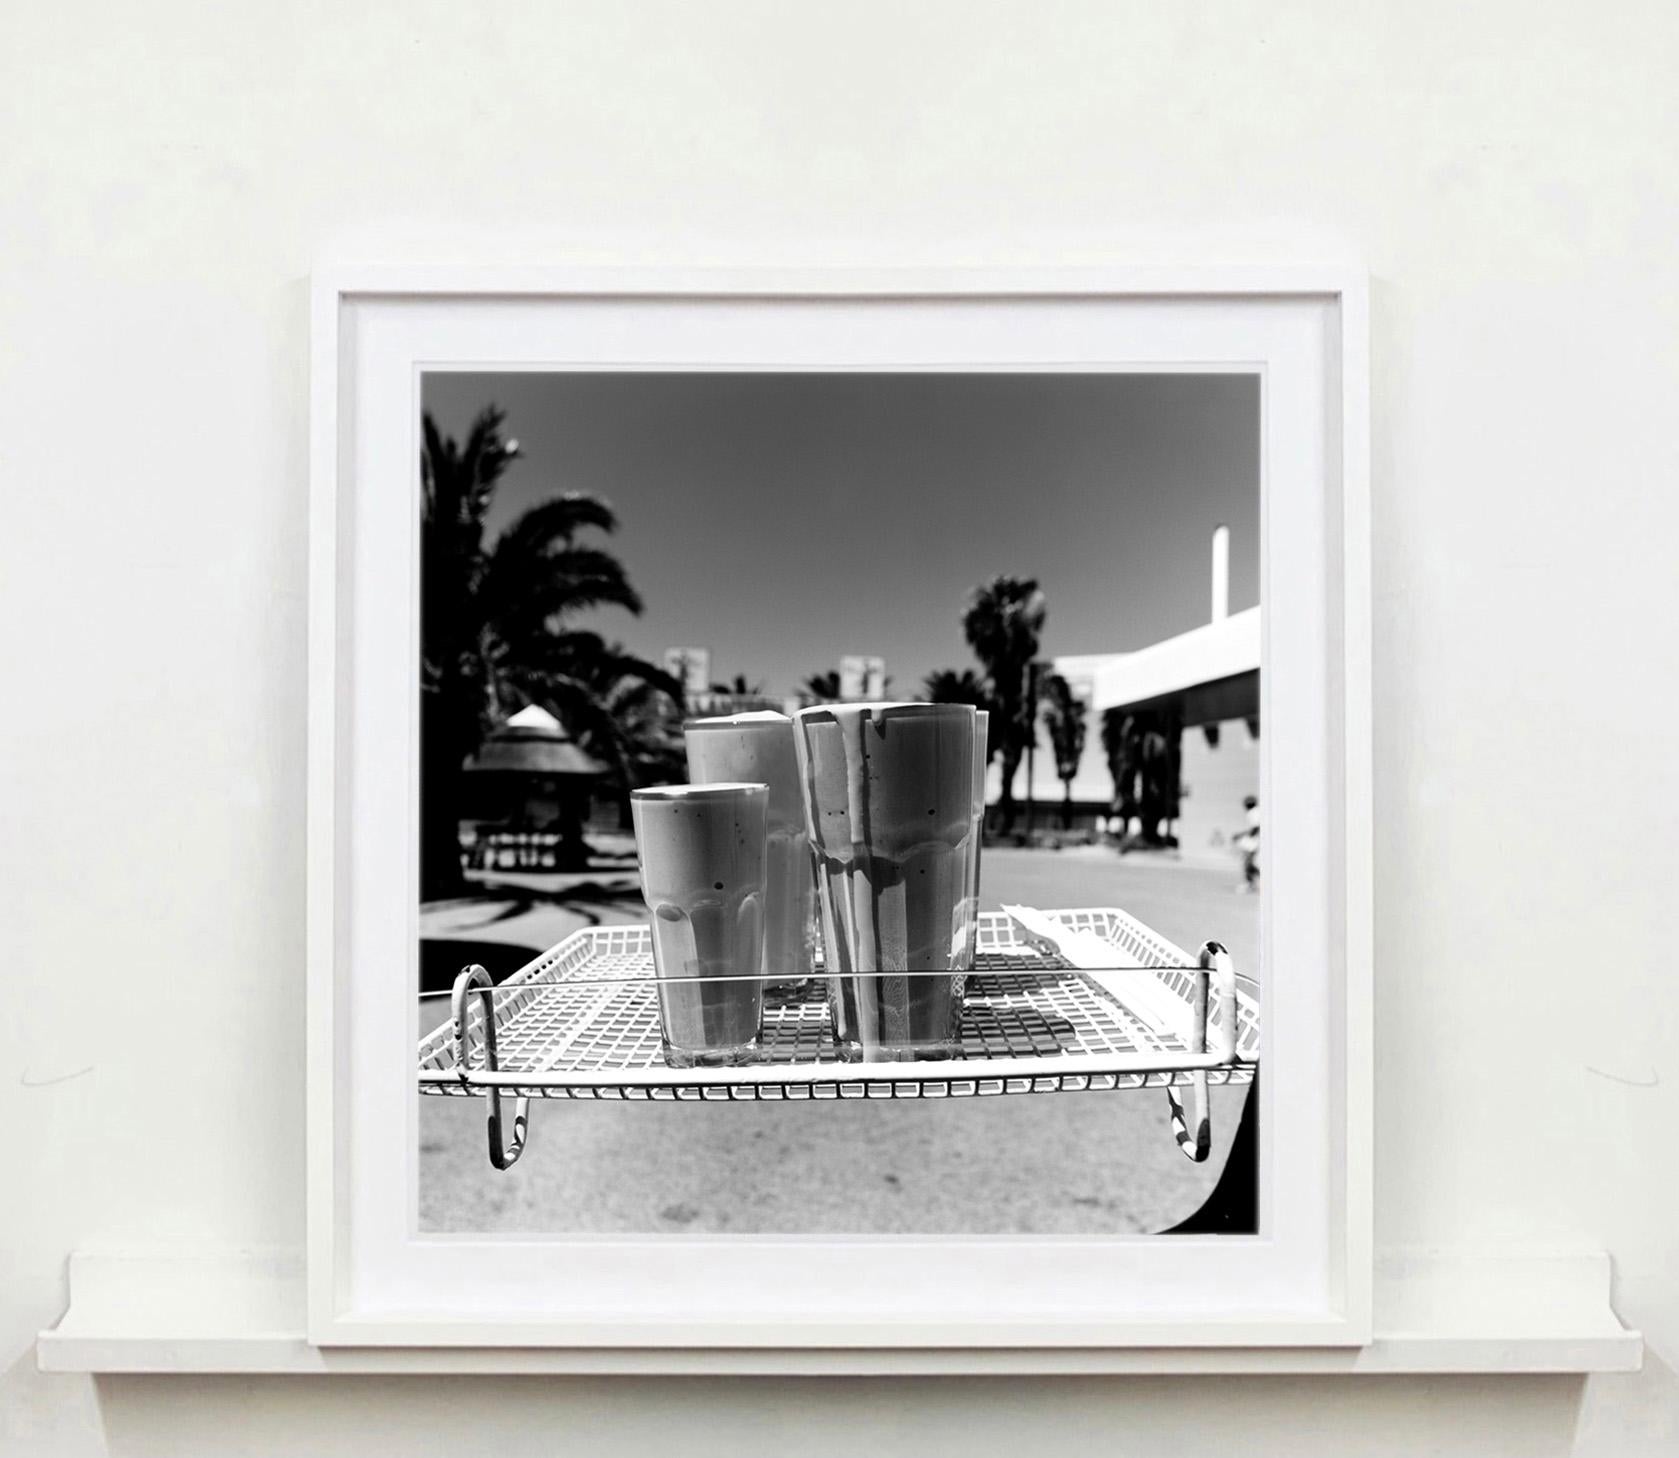 Milchkännchen, Parys, Free State - Schwarzweiße quadratische Fotografie (Zeitgenössisch), Photograph, von Richard Heeps